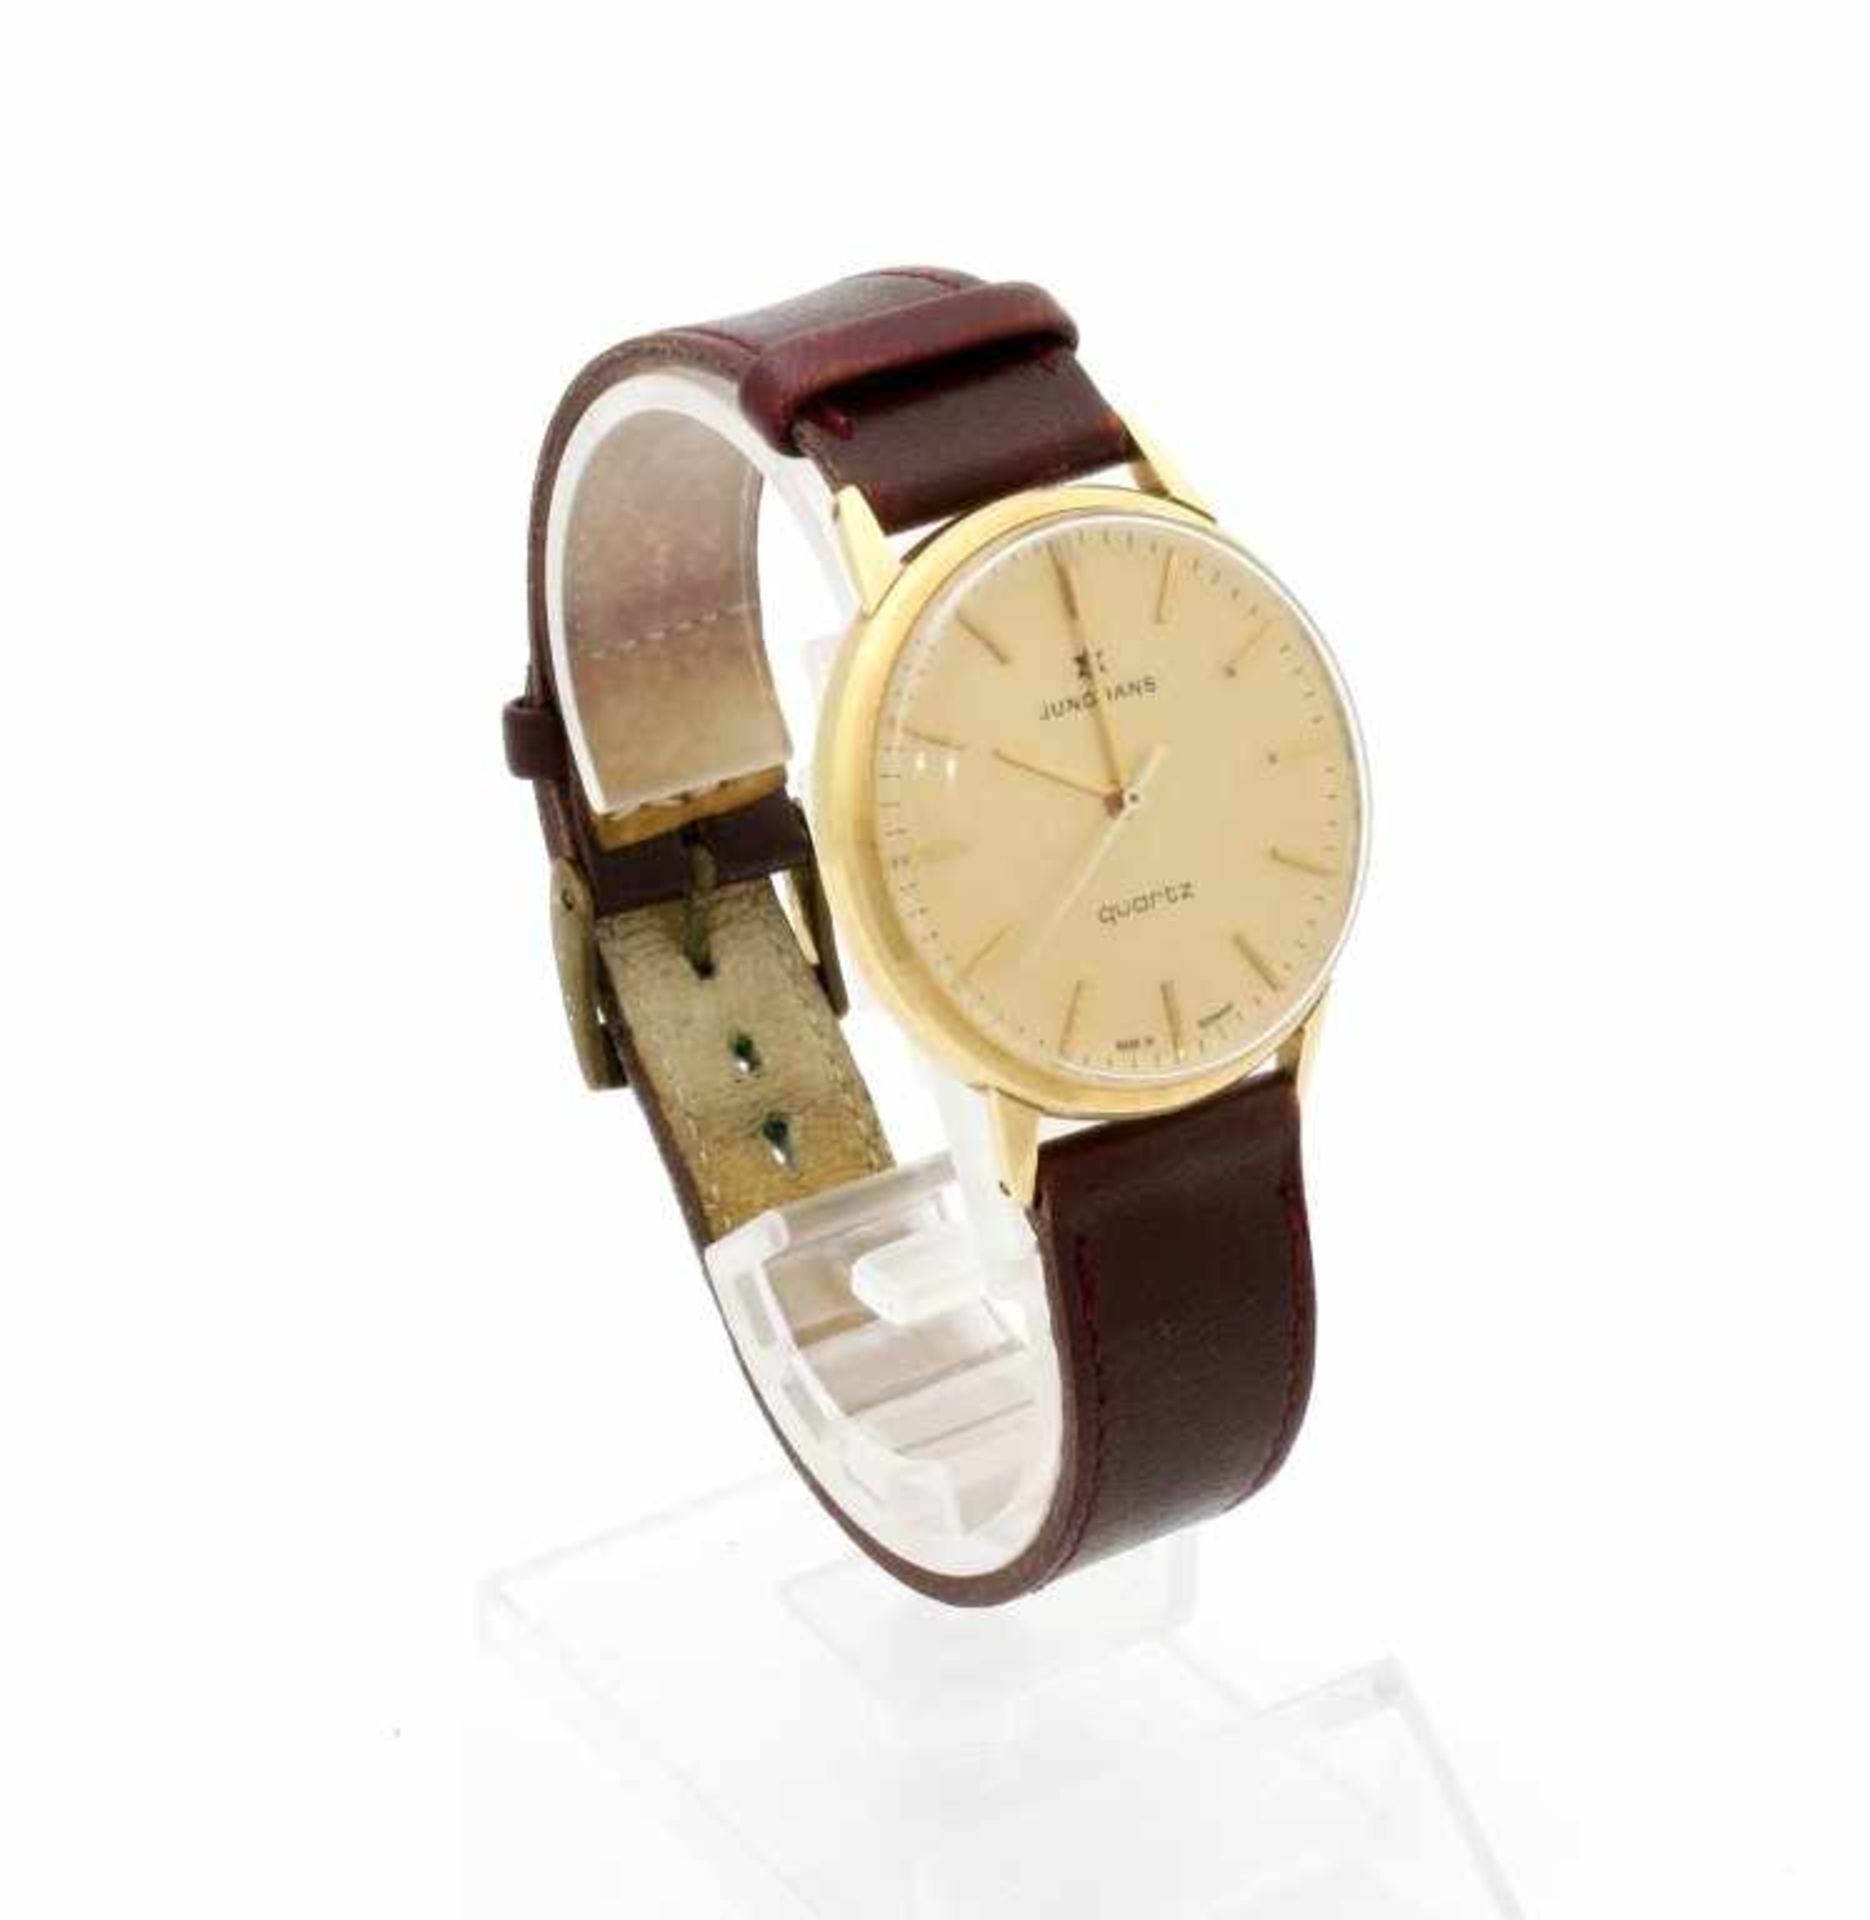 Goldene Armbanduhr Junghans 70er Jahre Quarzwerk, Ref. 667.01, Gehäuse GG 585, rückseitig Widmung, Ø